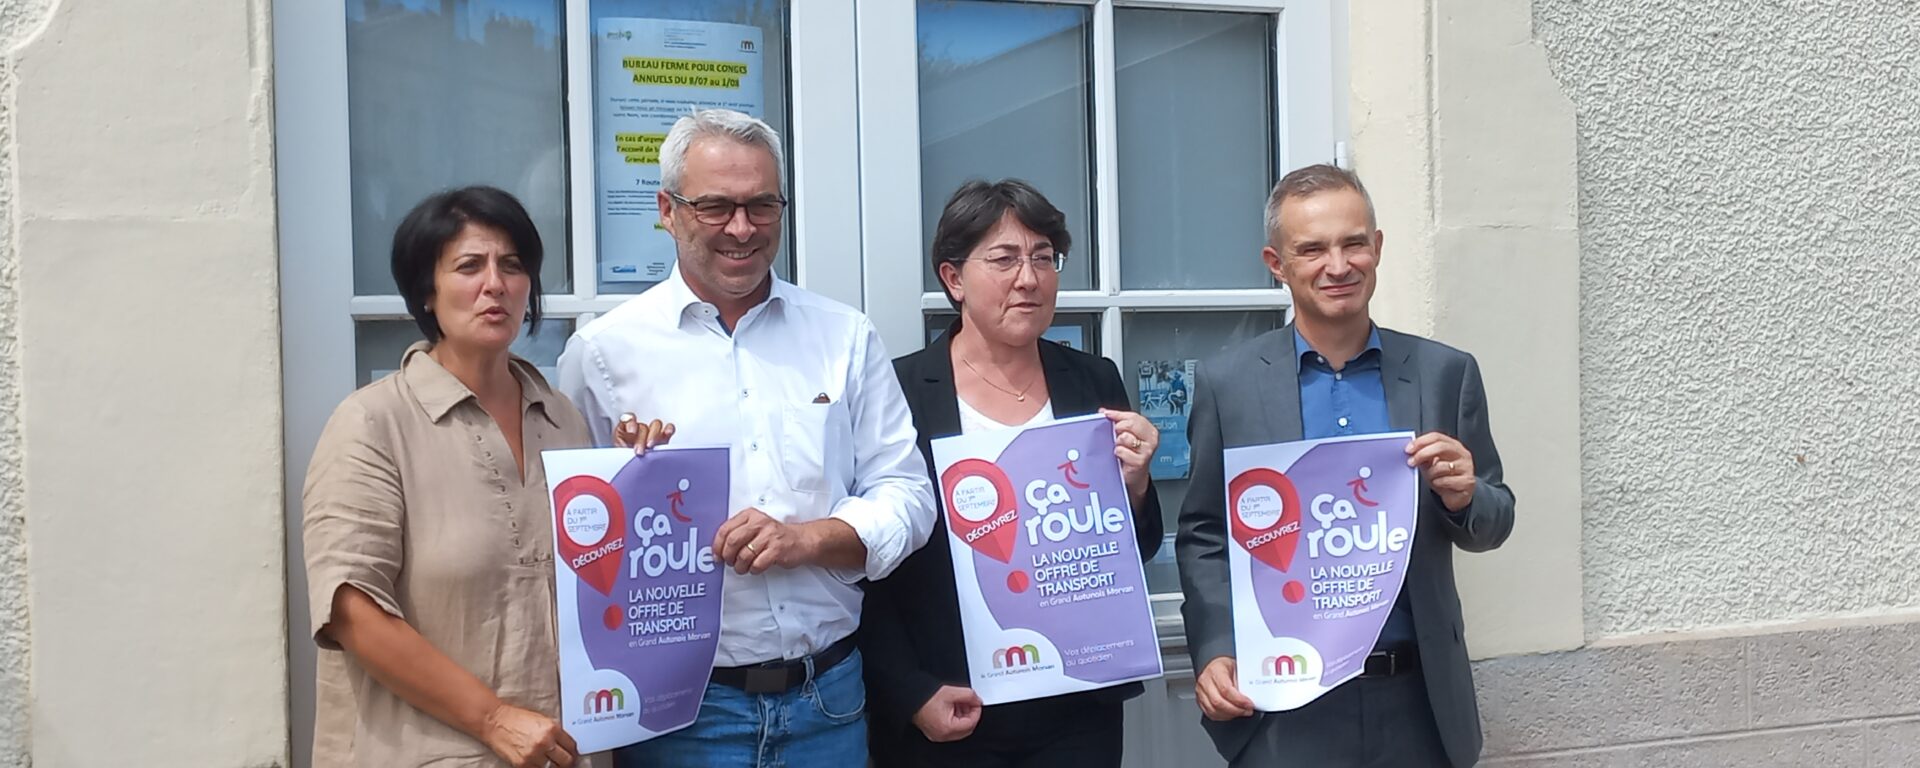 Transdev Bourgogne Franche Comté : 2 hommes et 2 femmes tiennent des affiches "ça roule", le nouveau réseau de transport